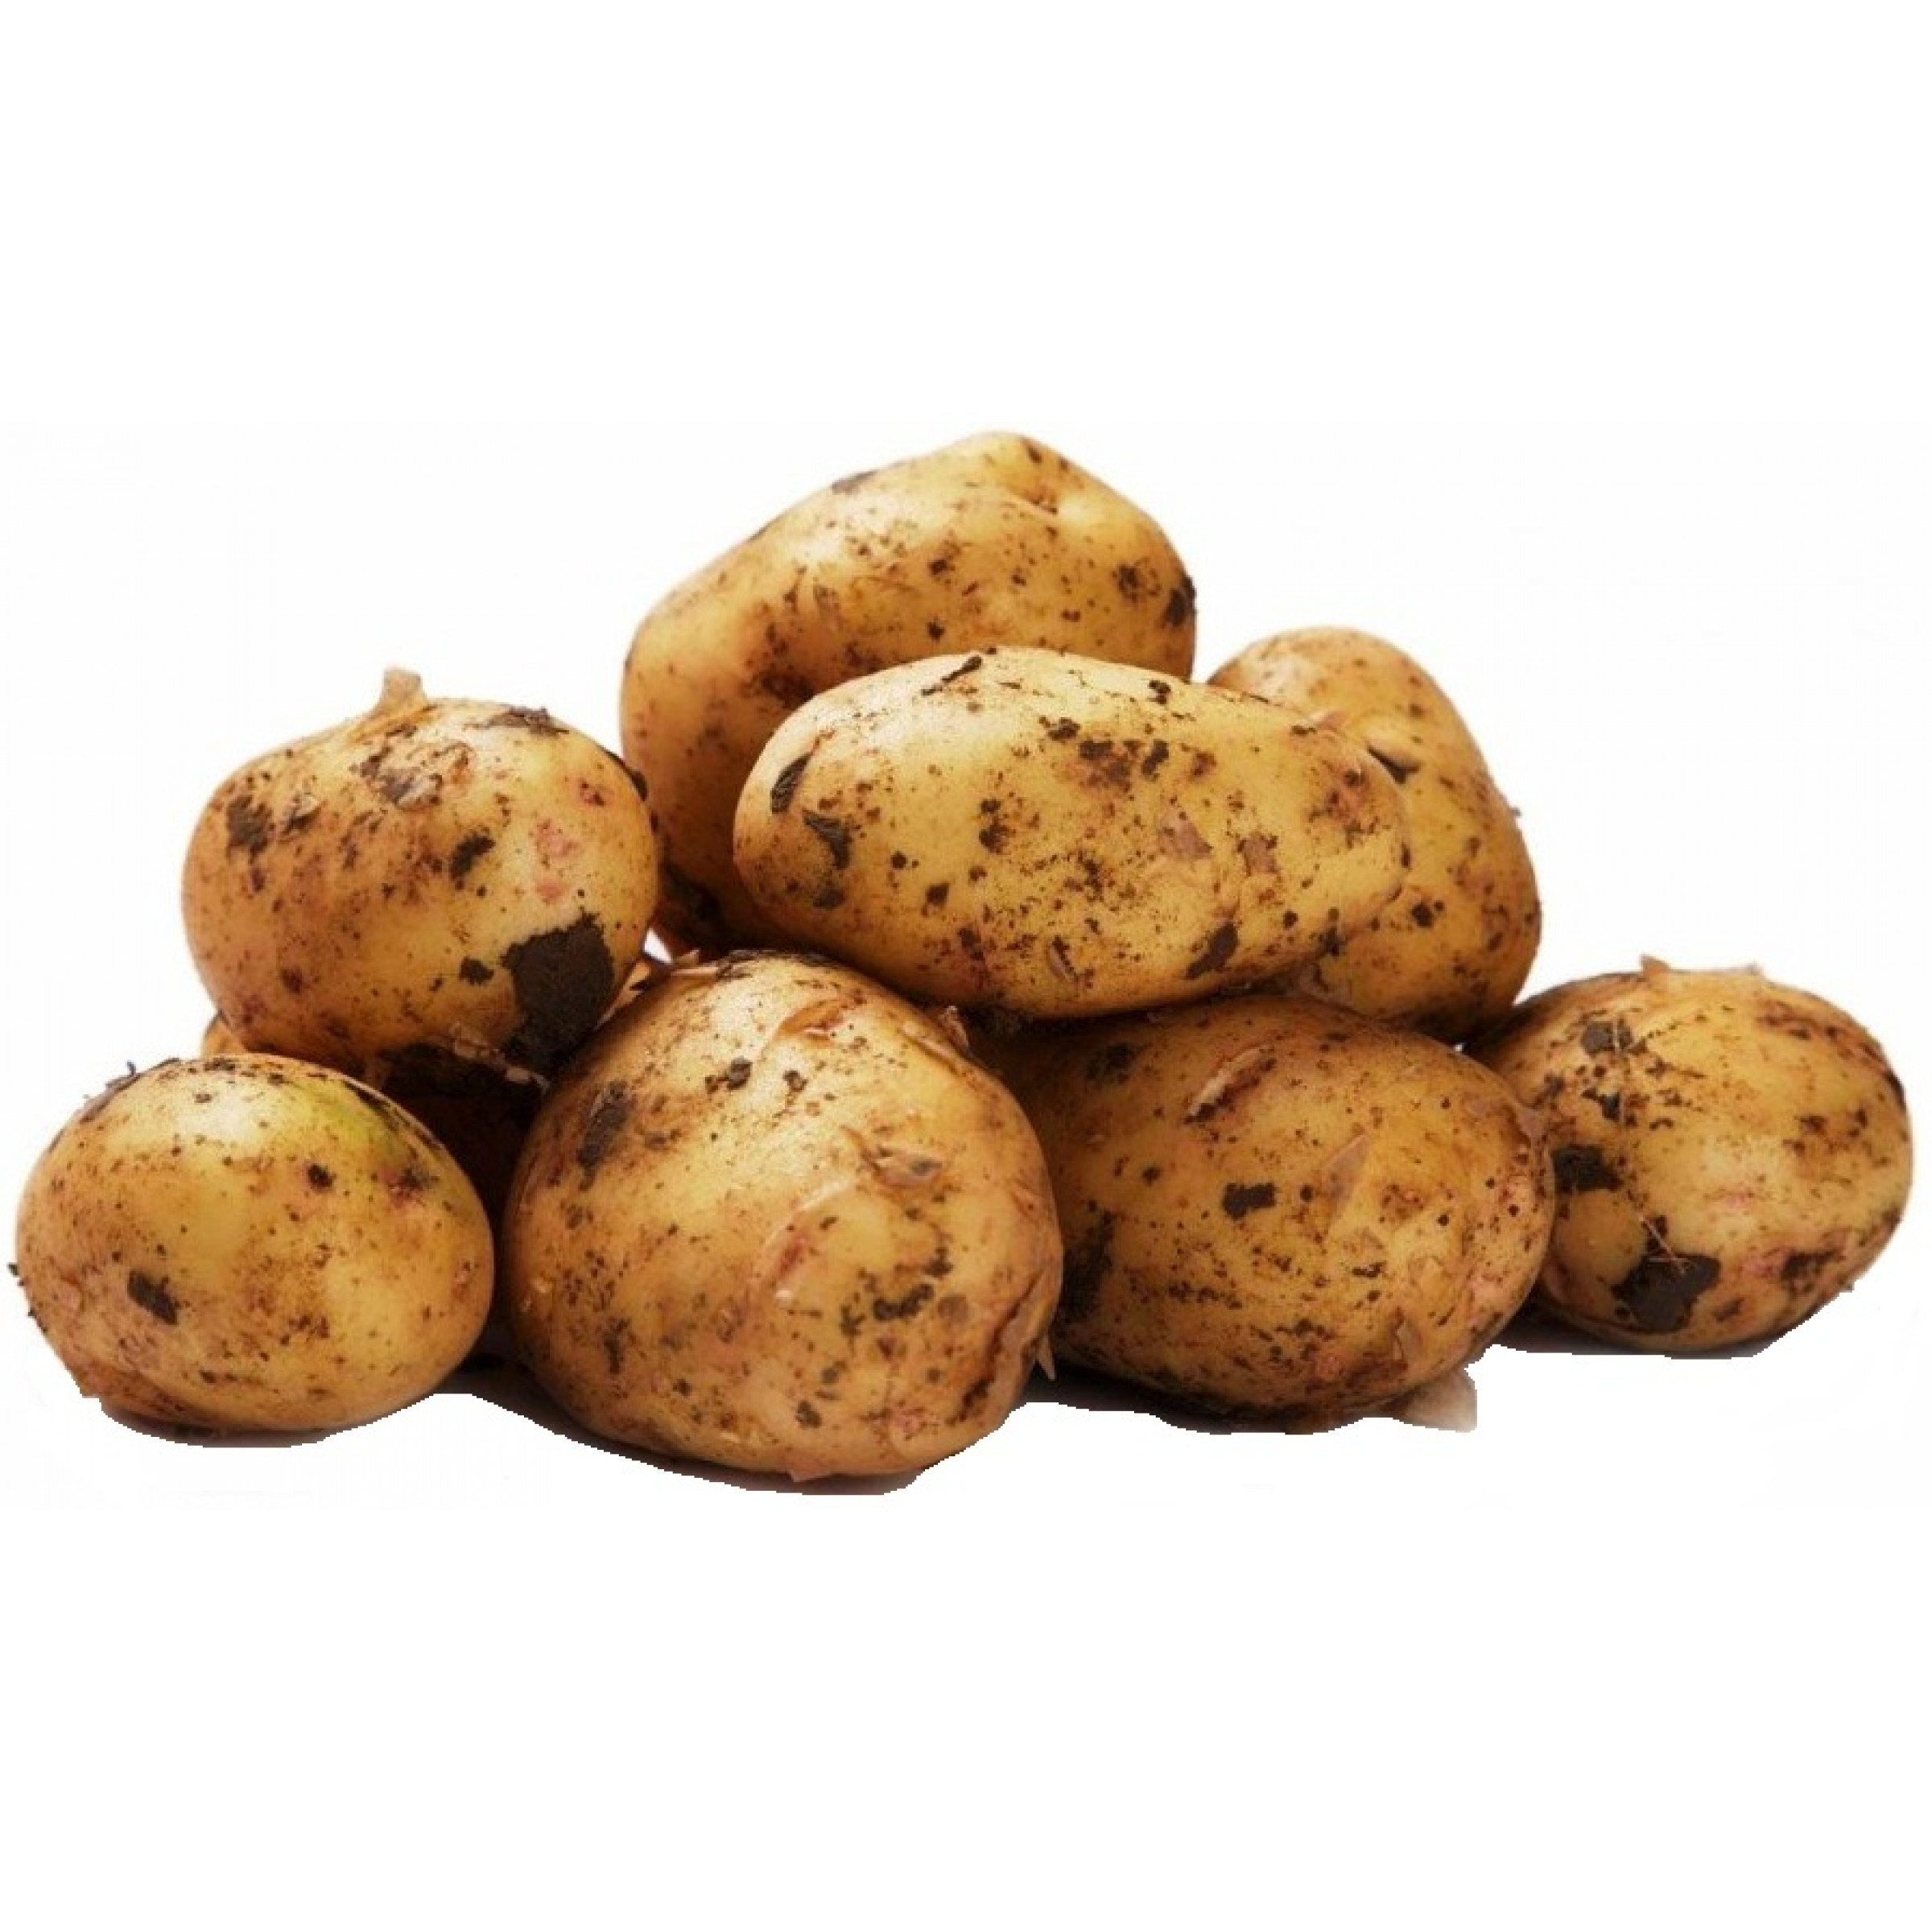 Белый картофель весовой (средний вес: 1200 г)